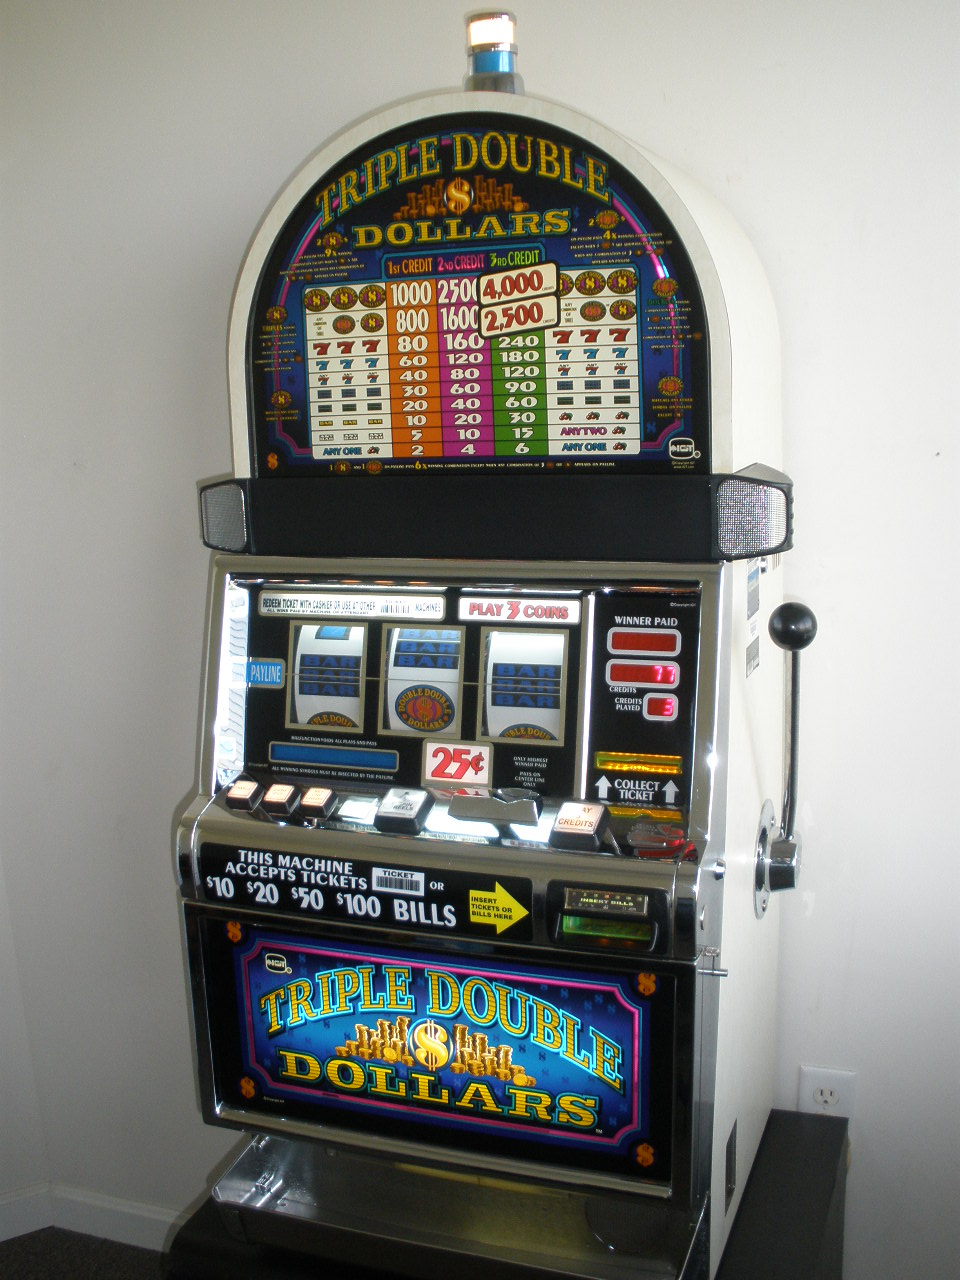 what denomination slot machine pays best